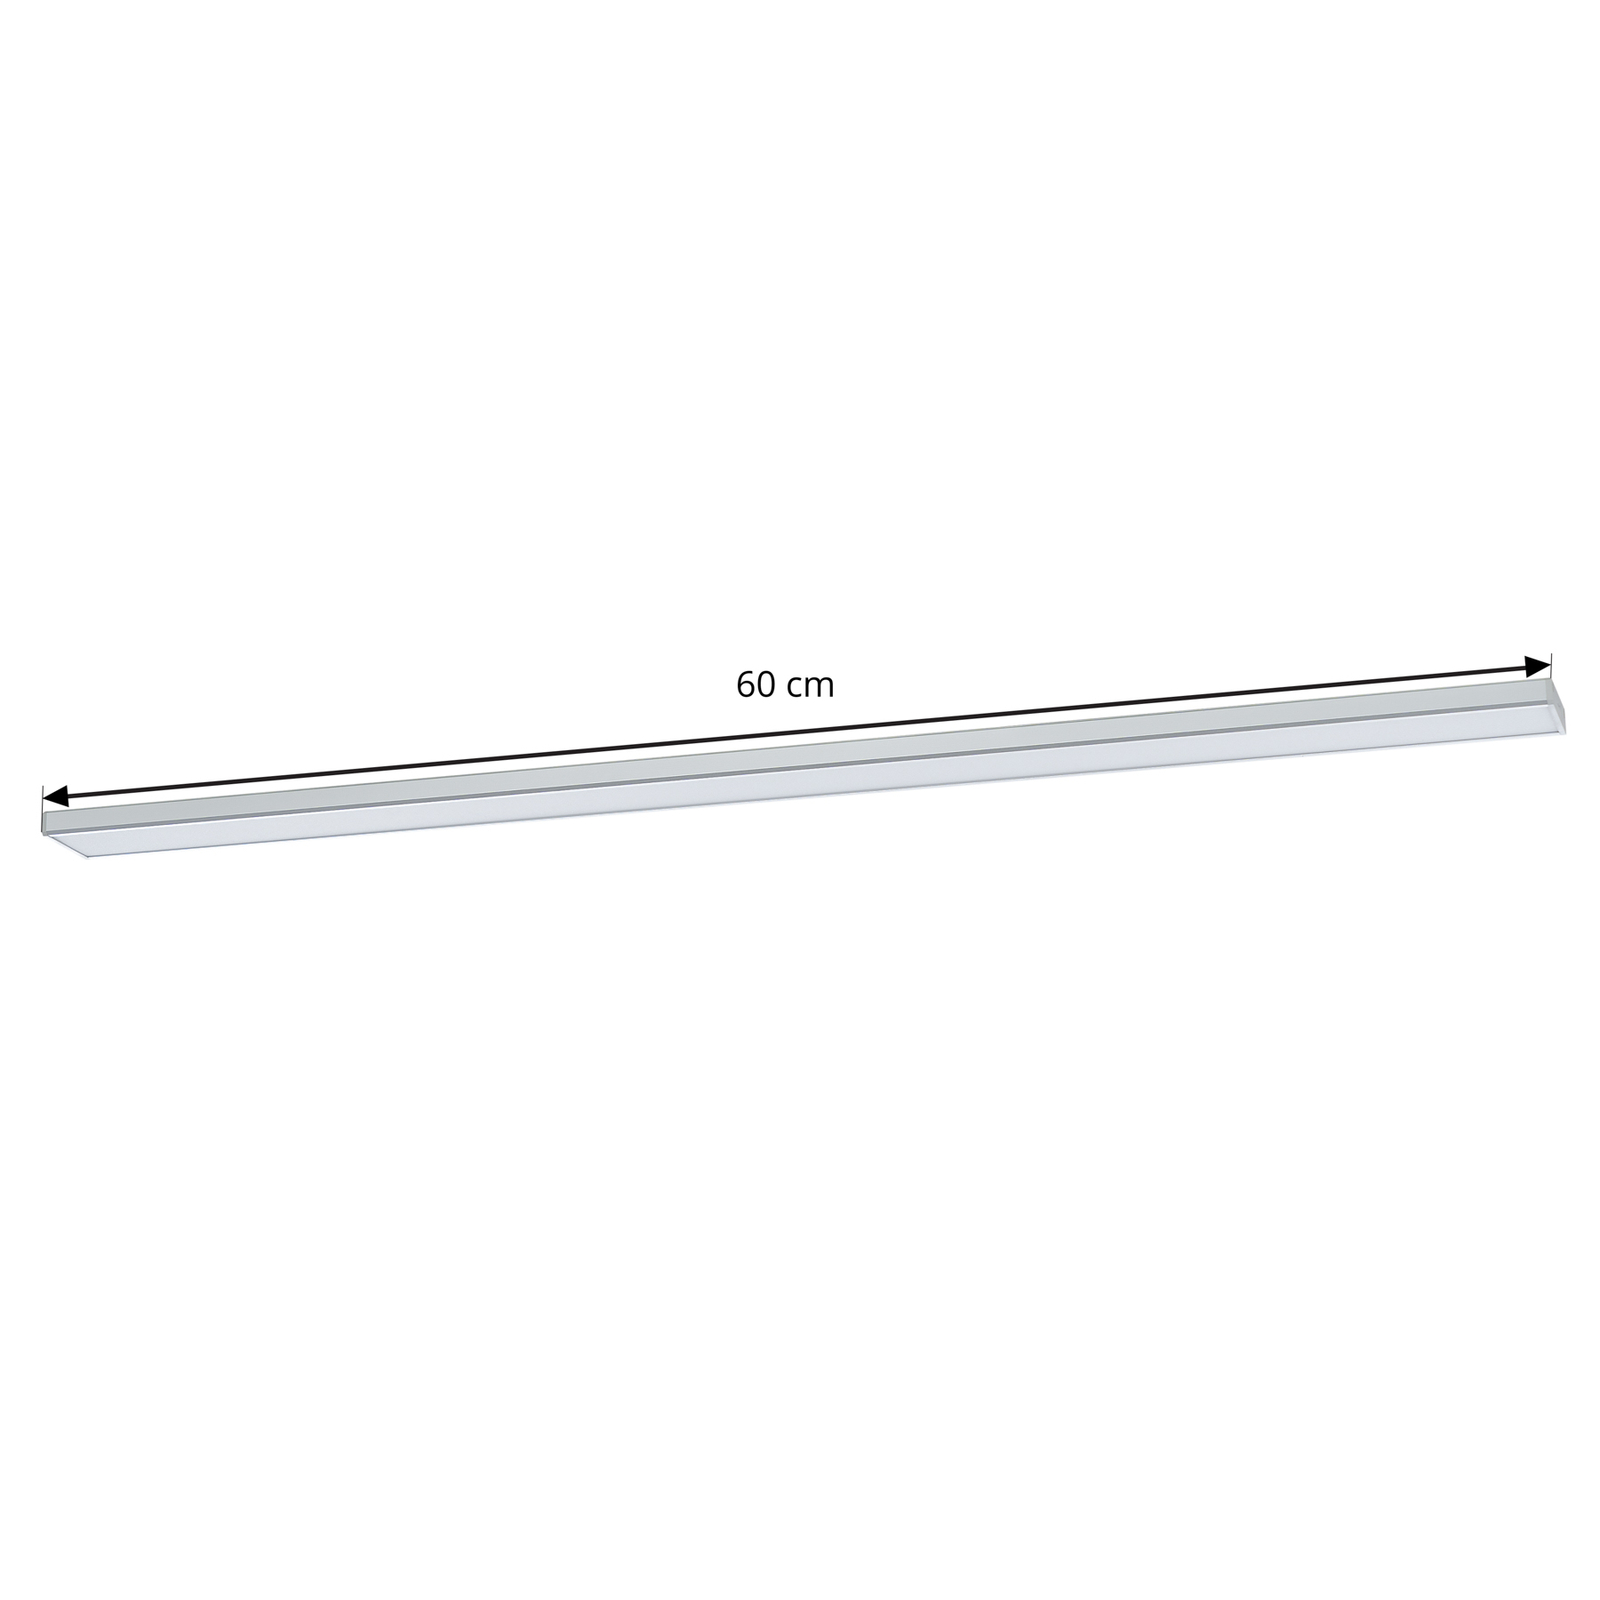 Prios Ashtonis LED-Unterbauleuchte, eckig, 60 cm